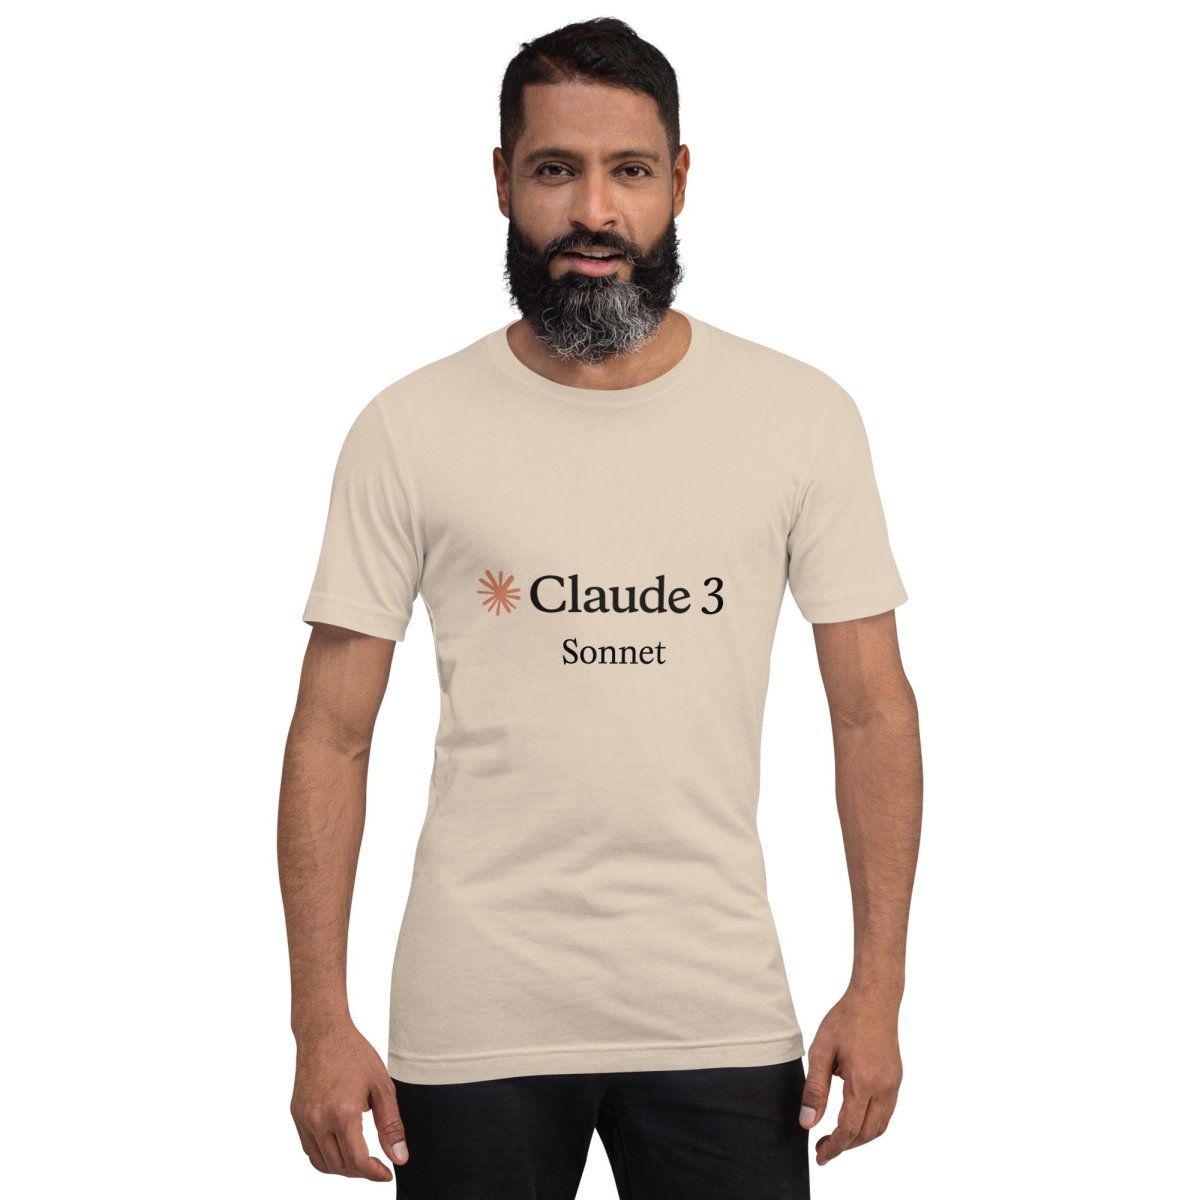 Claude 3 Sonnet T - Shirt (unisex) - Soft Cream - AI Store